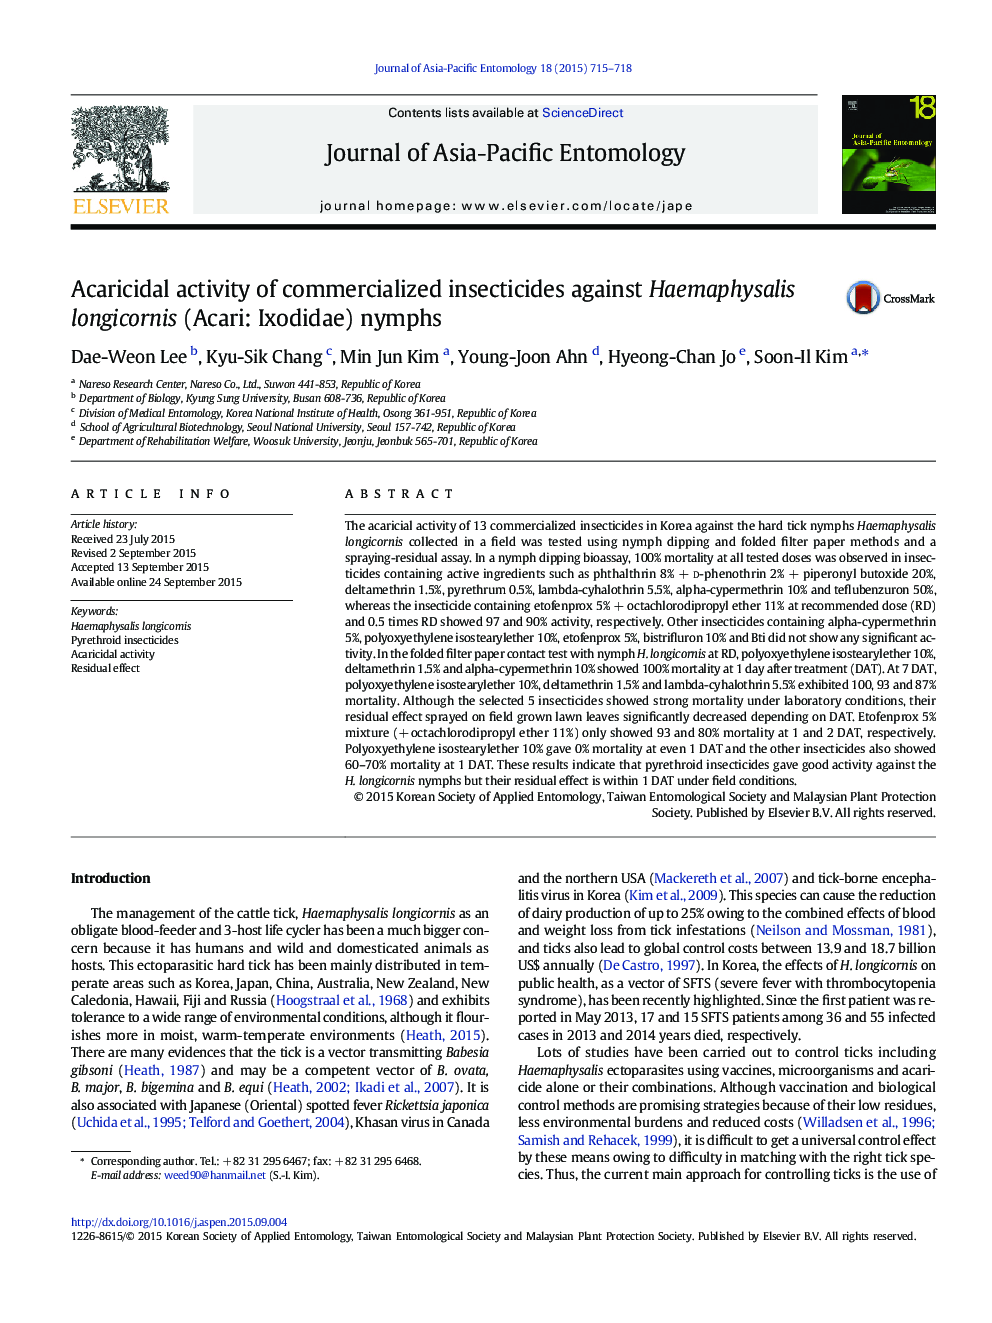 Acaricidal activity of commercialized insecticides against Haemaphysalis longicornis (Acari: Ixodidae) nymphs